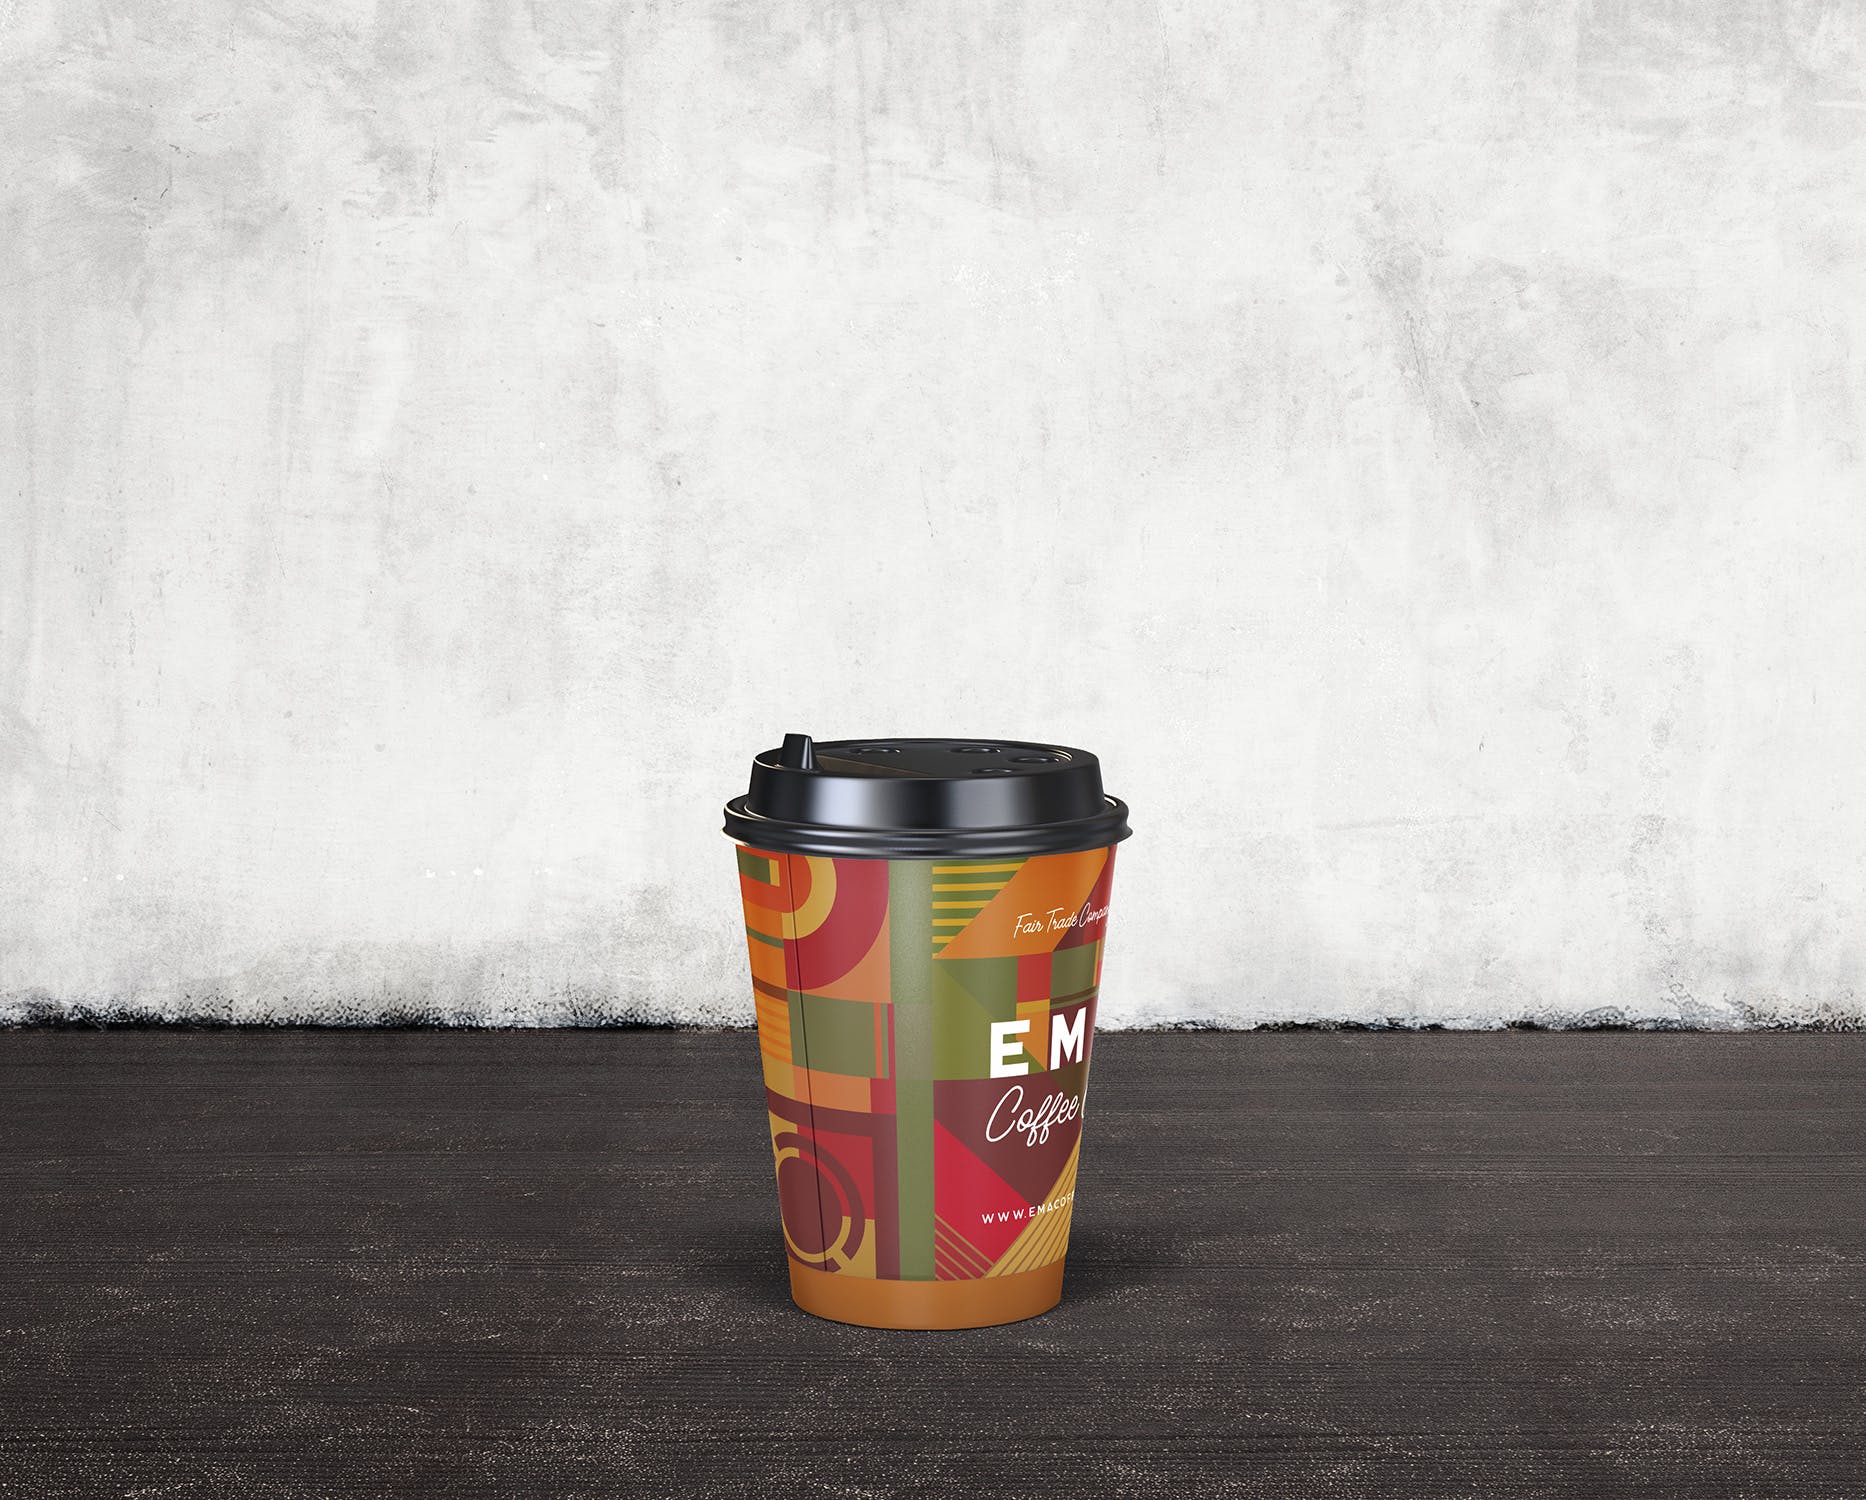 8个咖啡纸杯外观设计效果图素材中国精选 8 Coffee Paper Cup Mockups插图(3)